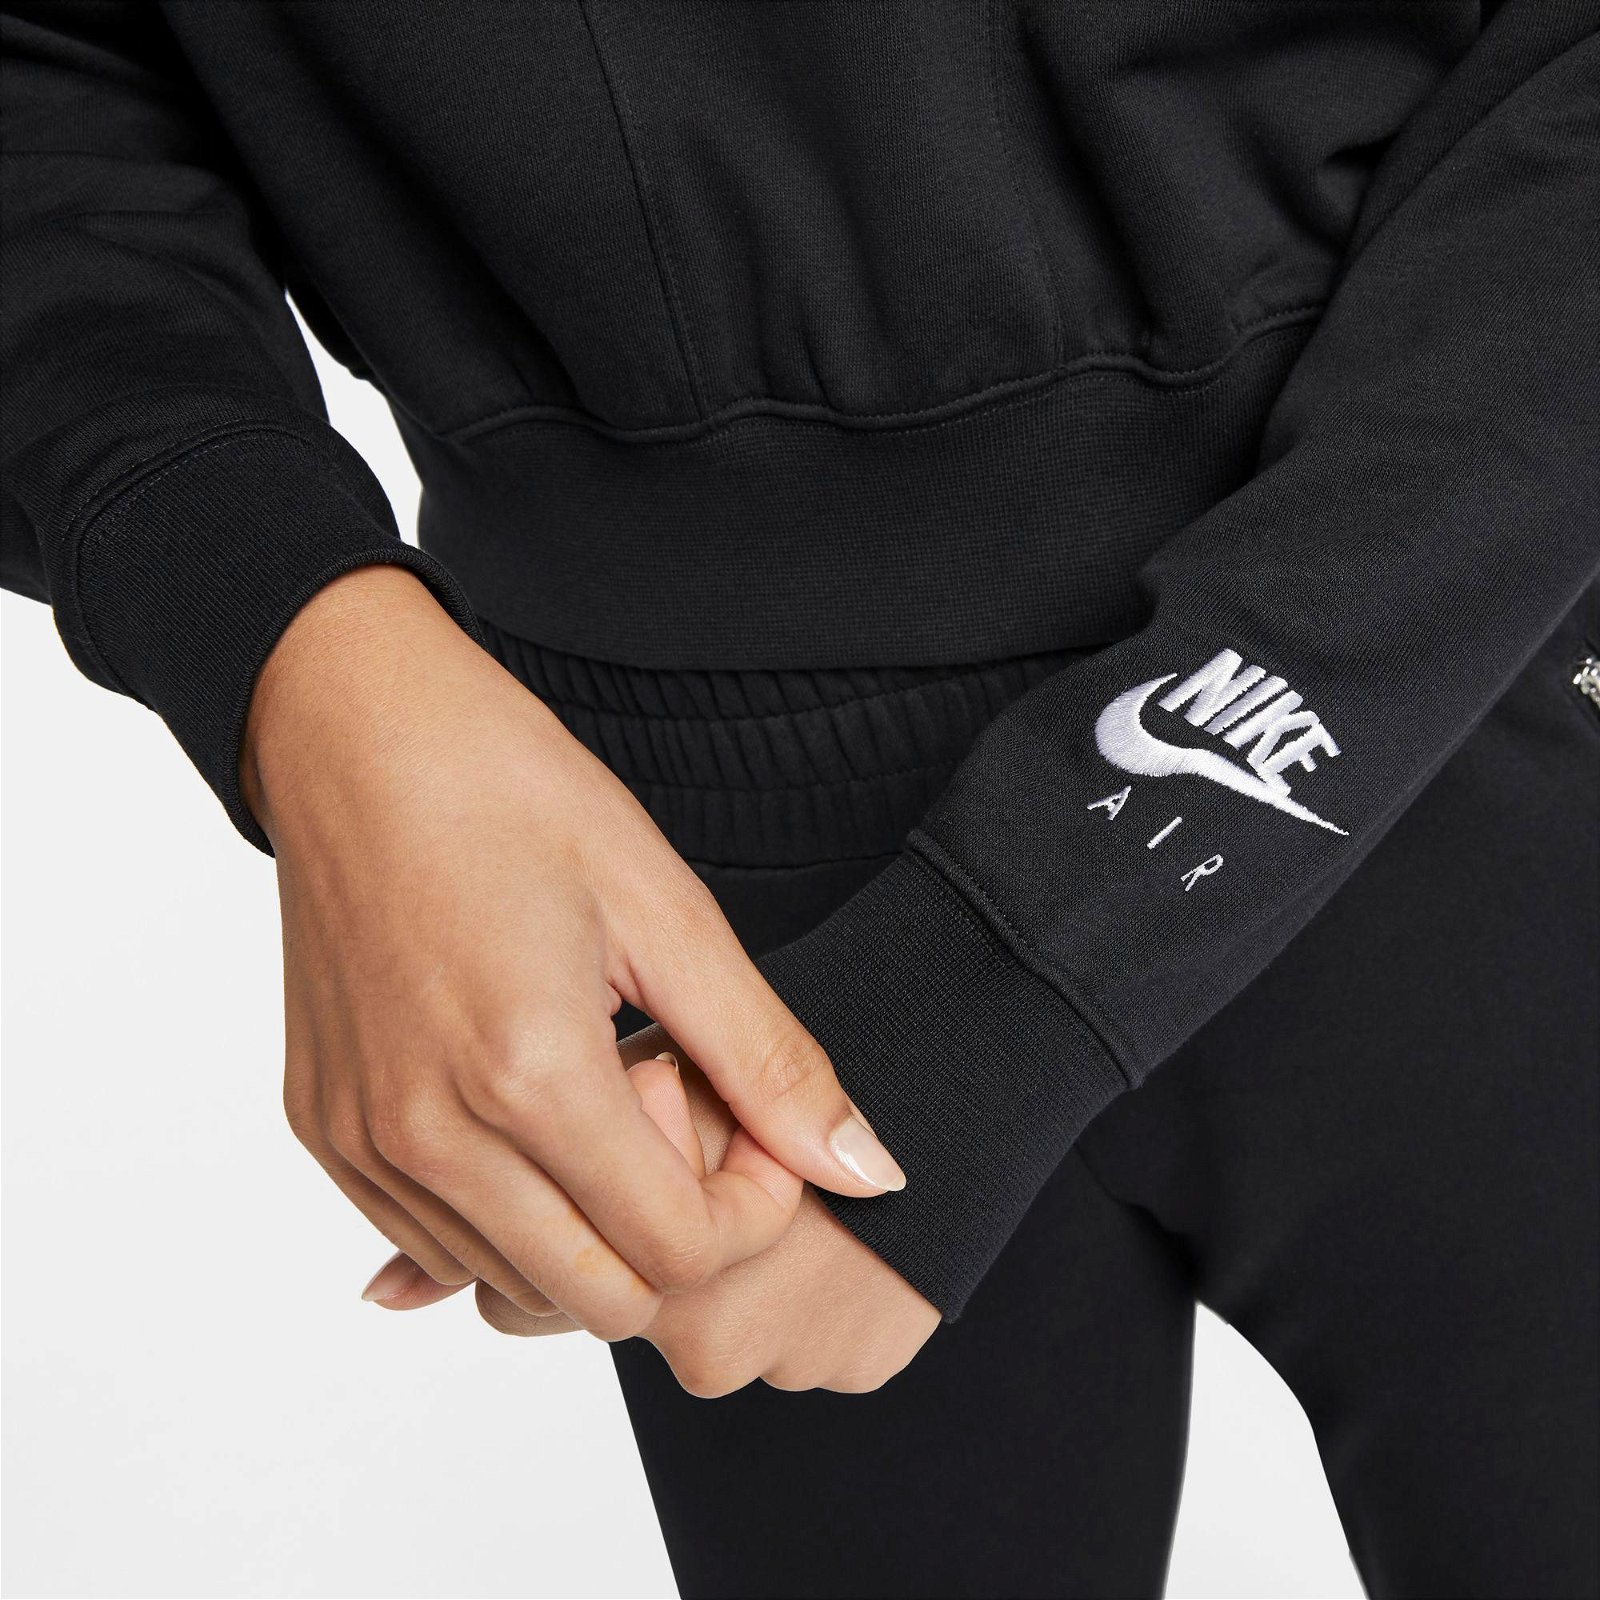 Nike Sportswear Air Fleece Mock Top Kadın Büyük Beden Siyah Sweatshirt